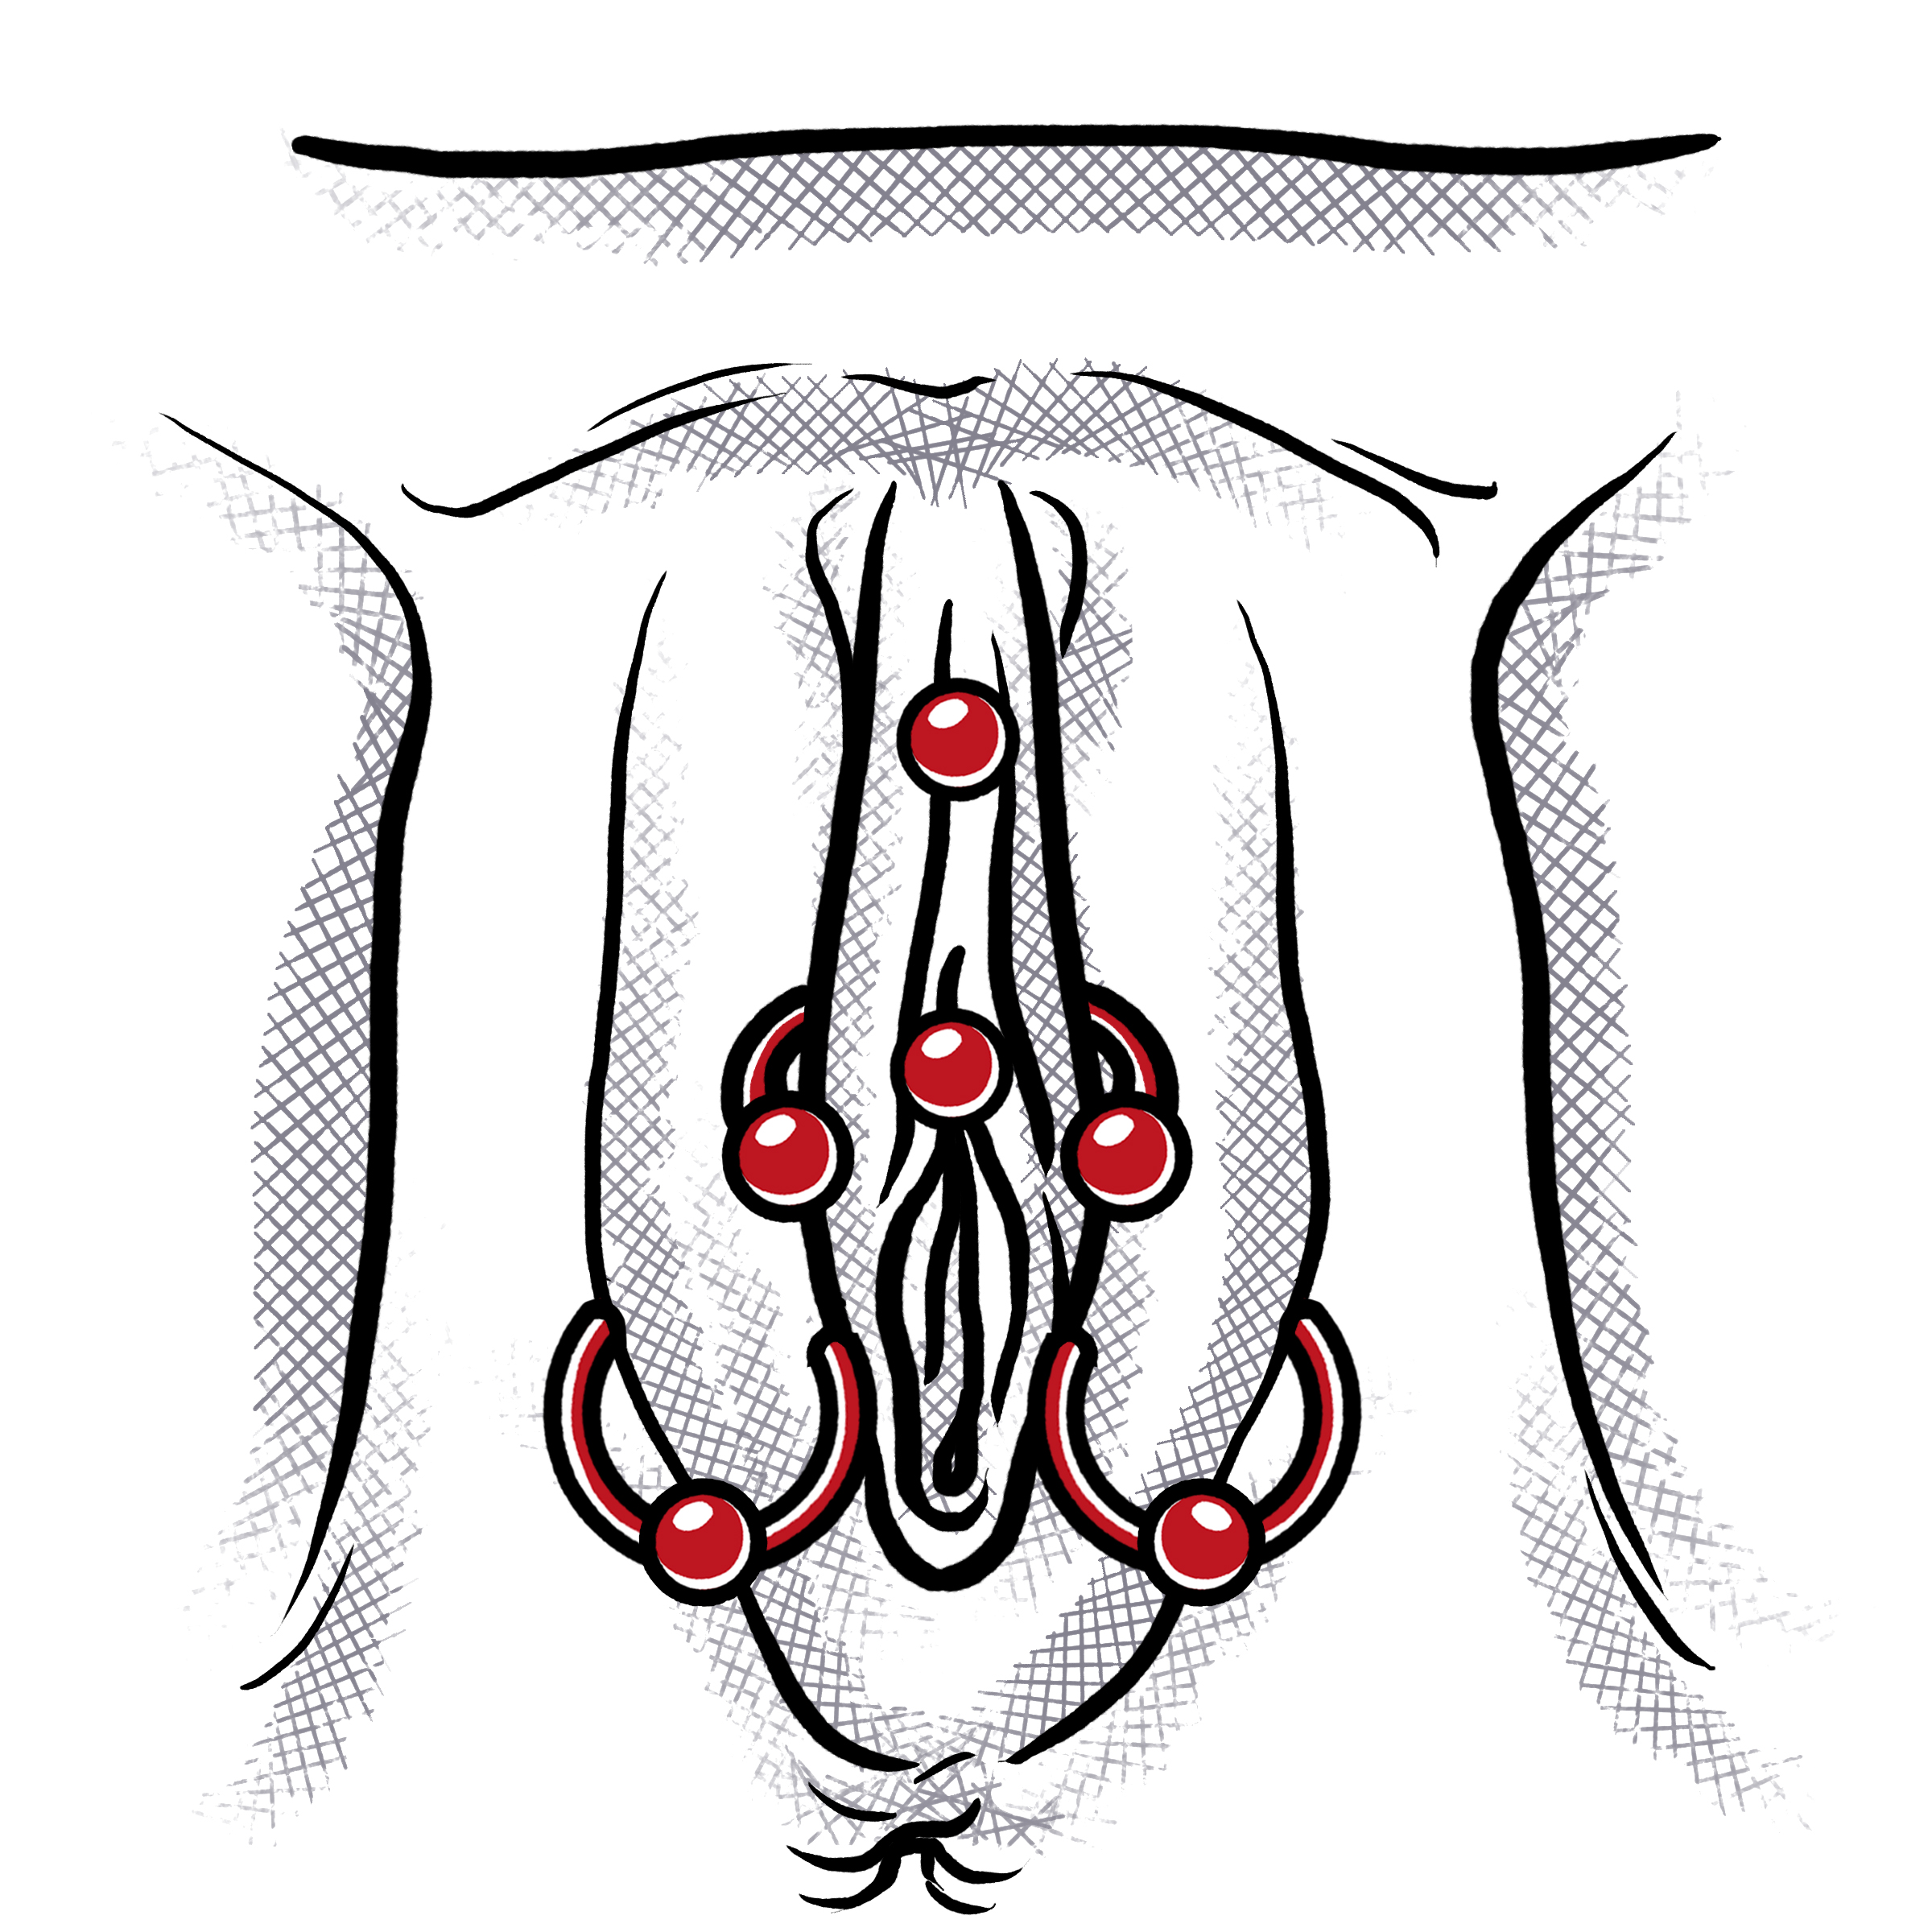 Video intimpiercing stechen Category:Labia piercings